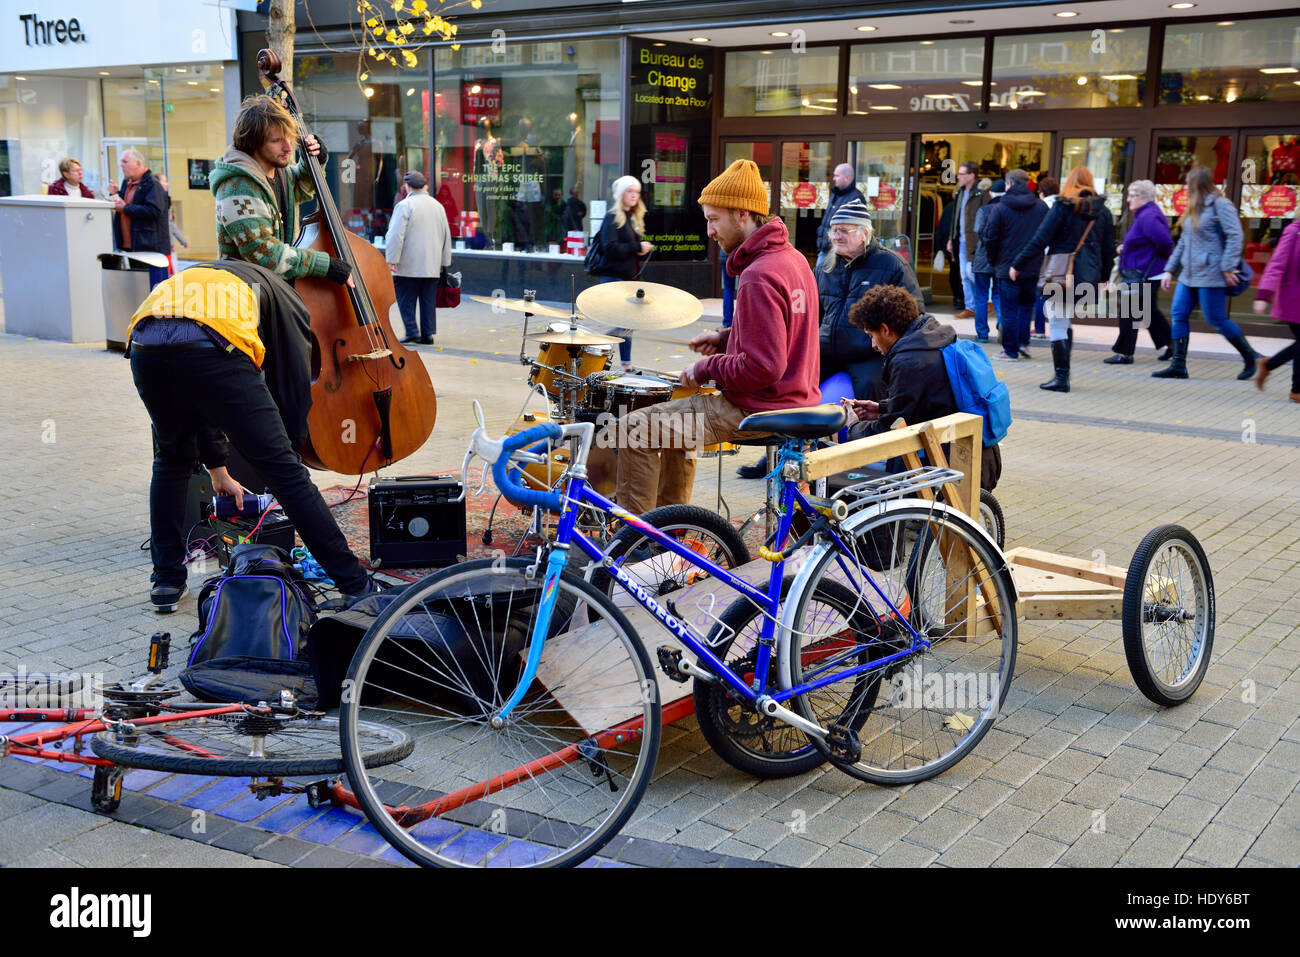 Gruppe Einstellung für Straßenmusik mit klassischer Musik, Broadmead, Bristol, UK Stockfoto